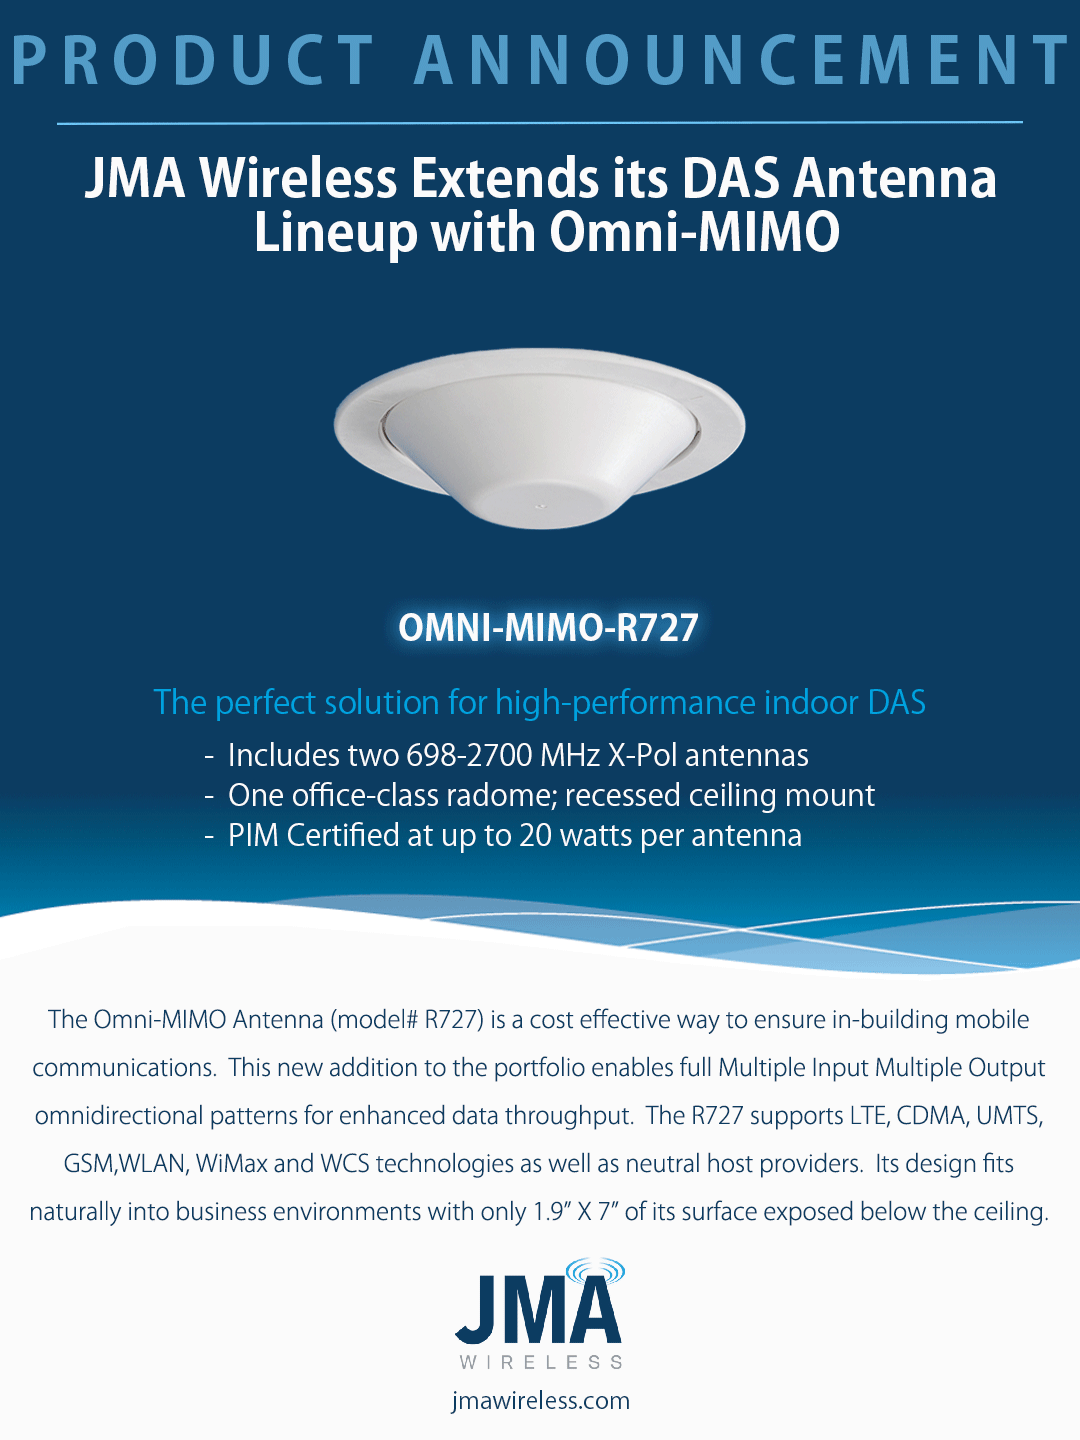 MIMO_OMNI_Announcement-1